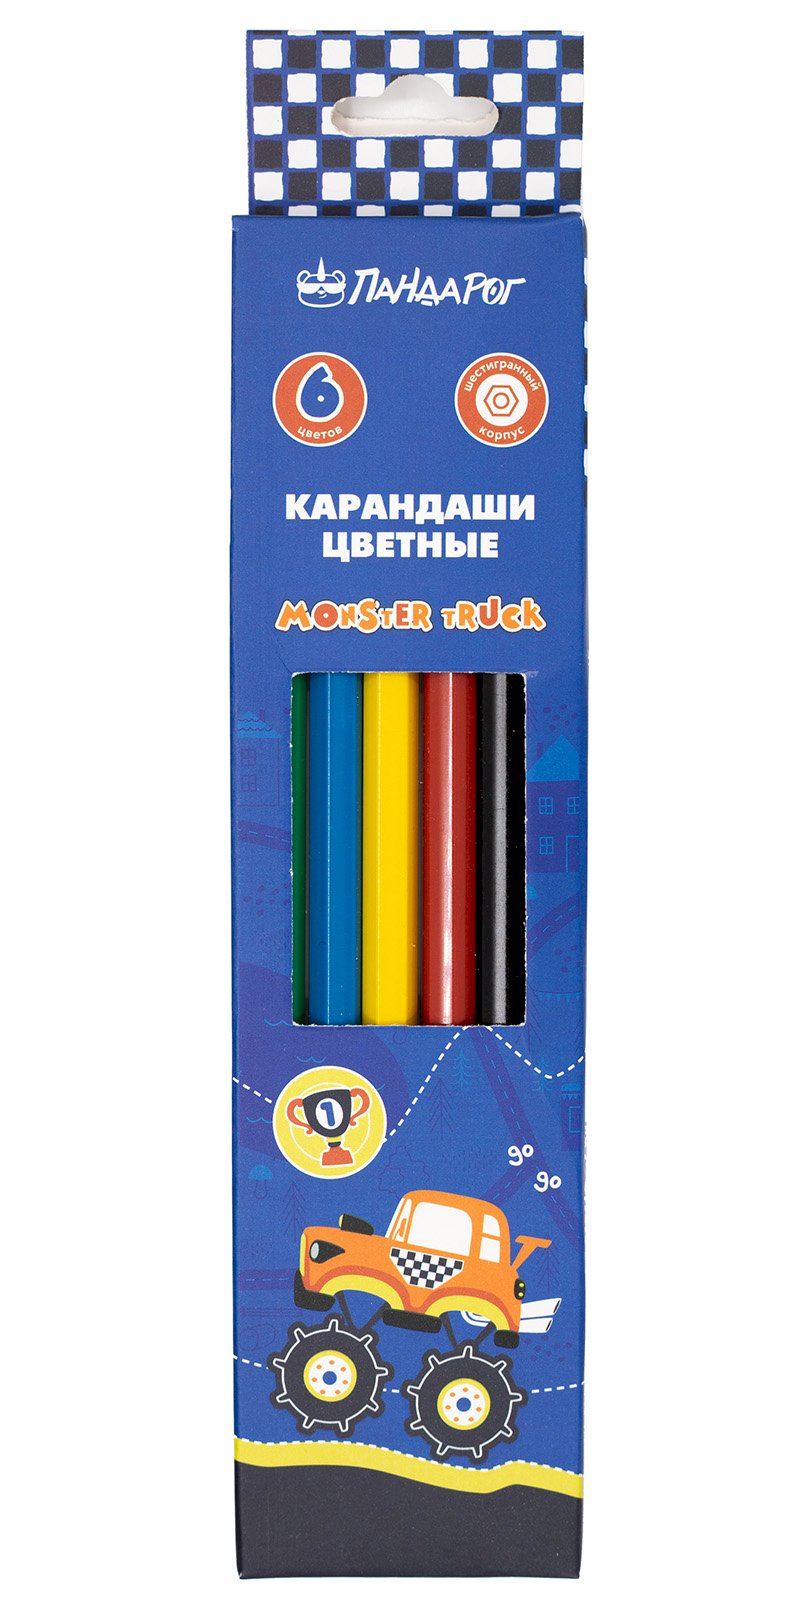 Карандаши цветные ПандаРог Гонка, 6 цветов, пластиковые, шестигранные